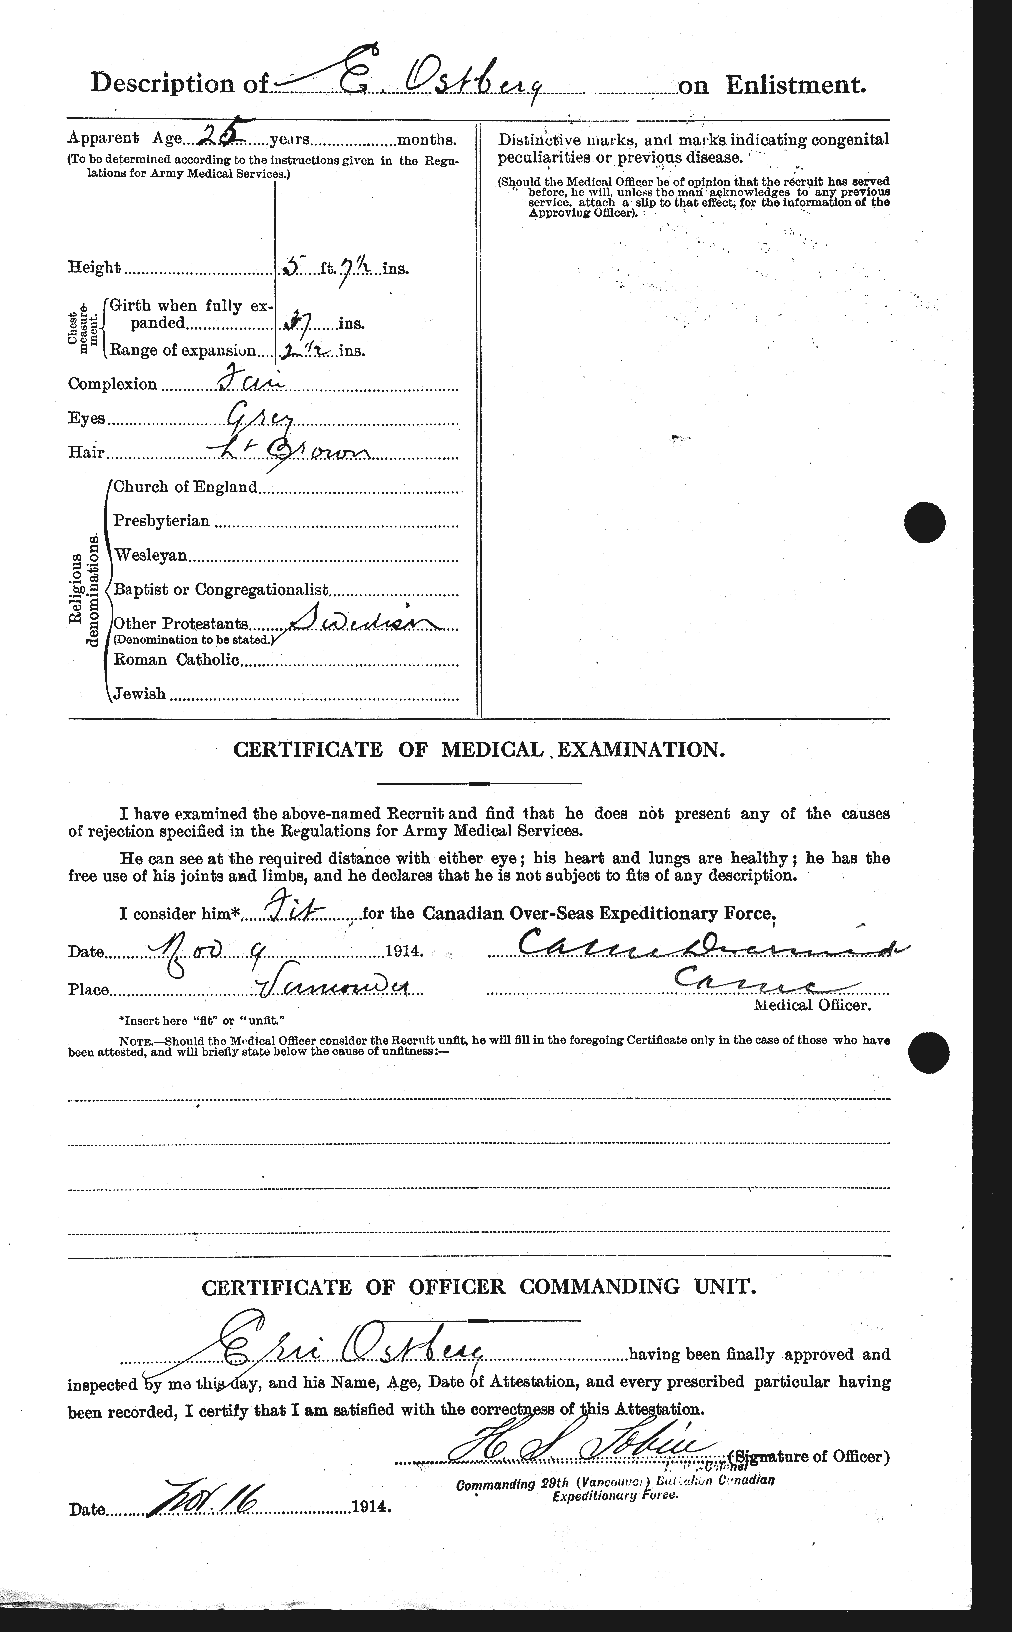 Dossiers du Personnel de la Première Guerre mondiale - CEC 560167b